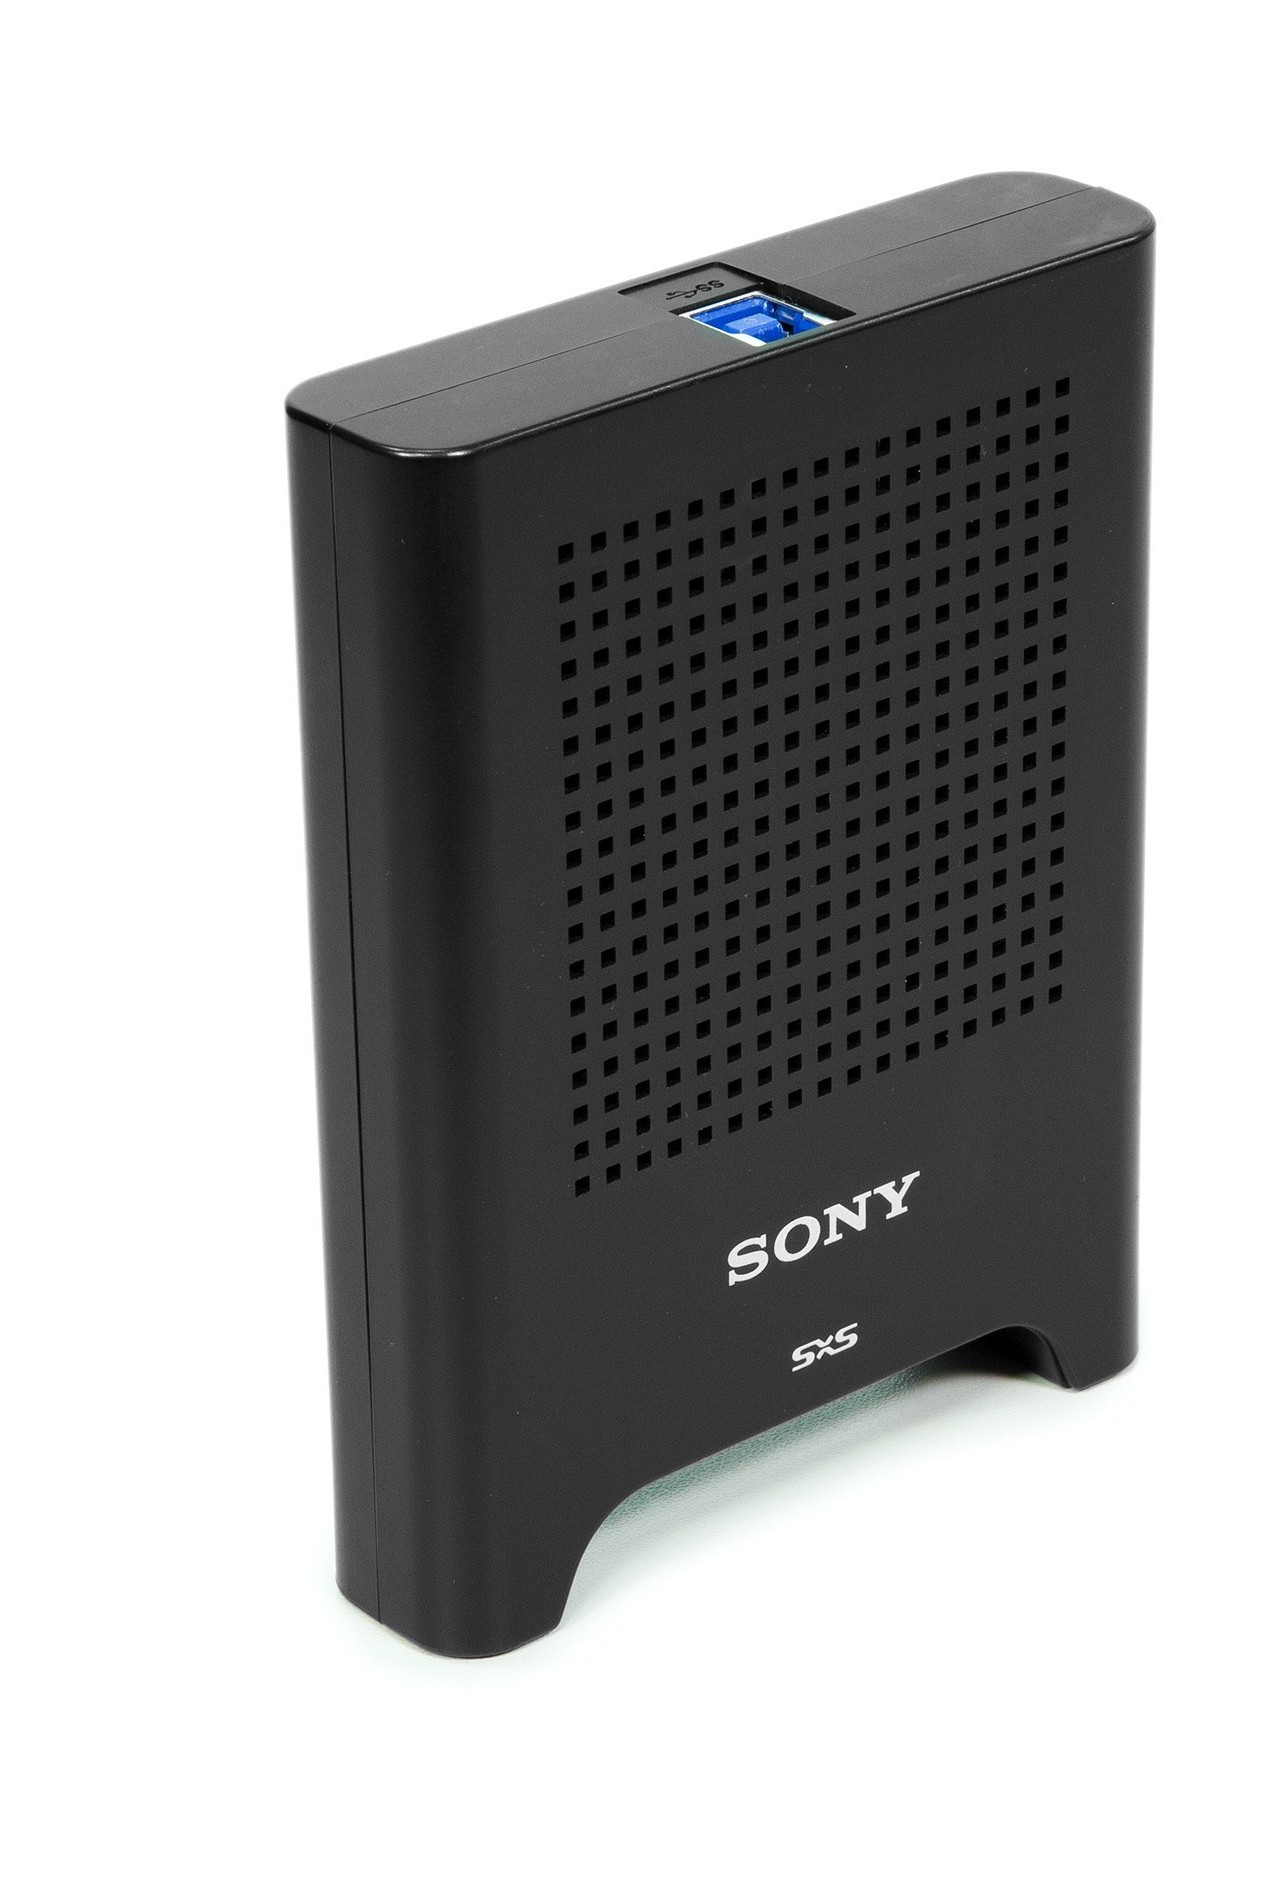 SONY SBAC-US30, Đầu đọc thẻ SxS chuẩn USB 3.0 